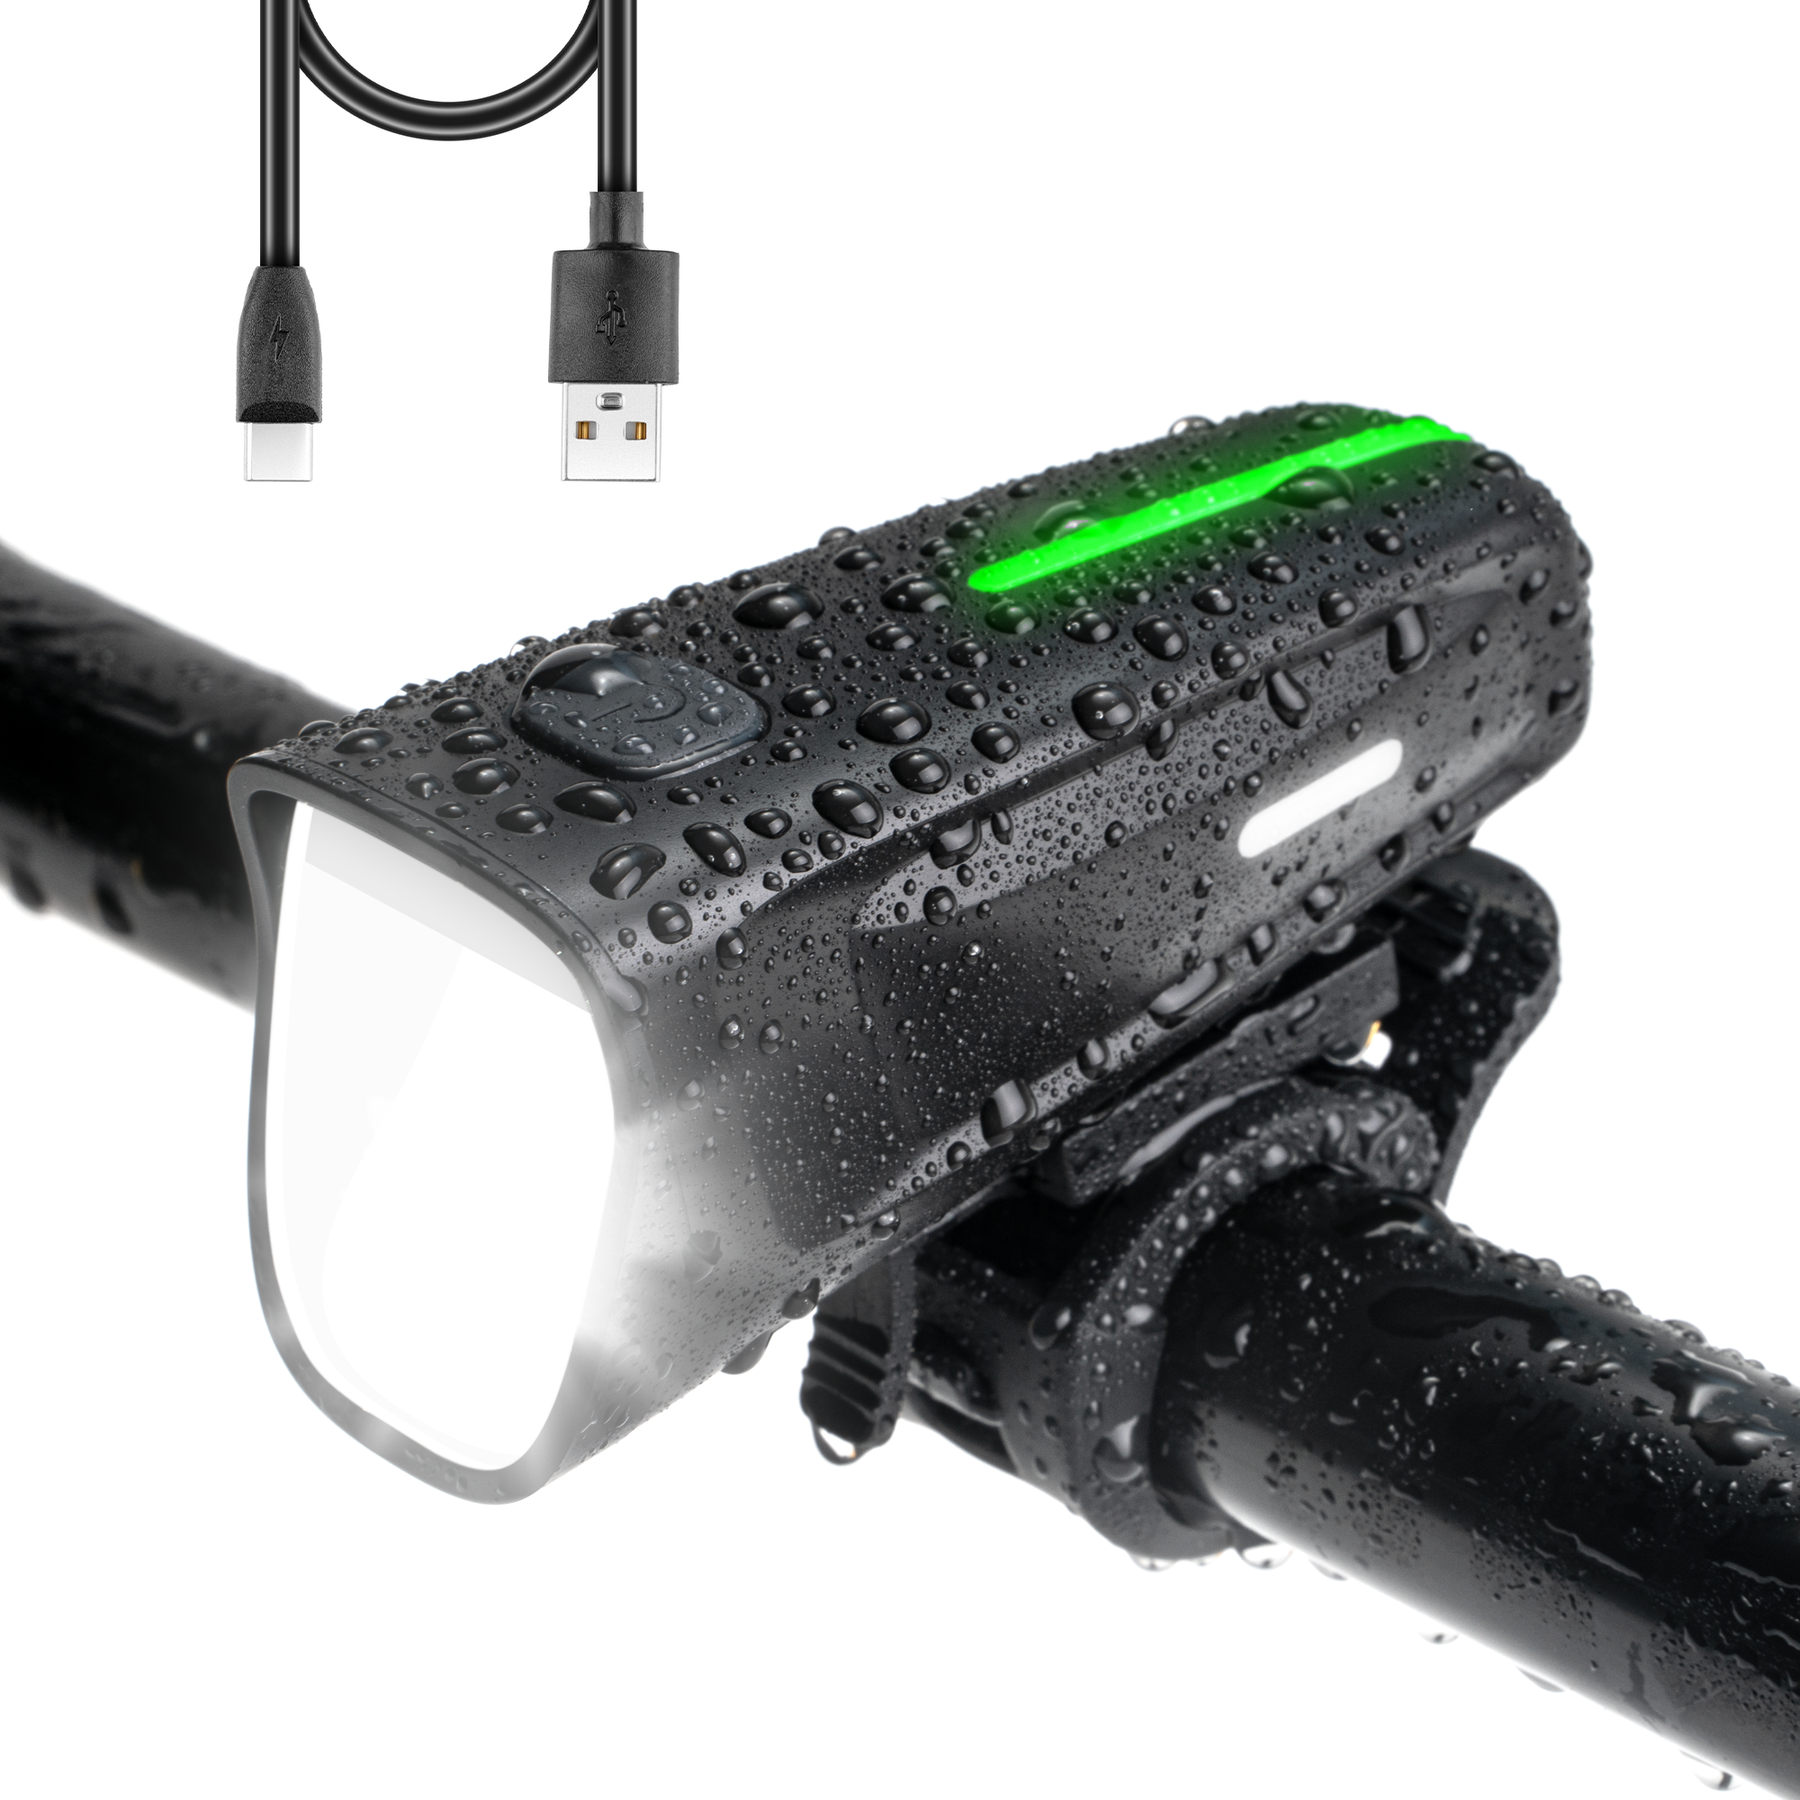 HENMI LED Fahrradlicht Vorne 100 LUX,Fahrradbeleuchtung stvzo  zugelassen,Fahrradlampe USB Aufladbar mit Batterie Aufforderung schwach und  3